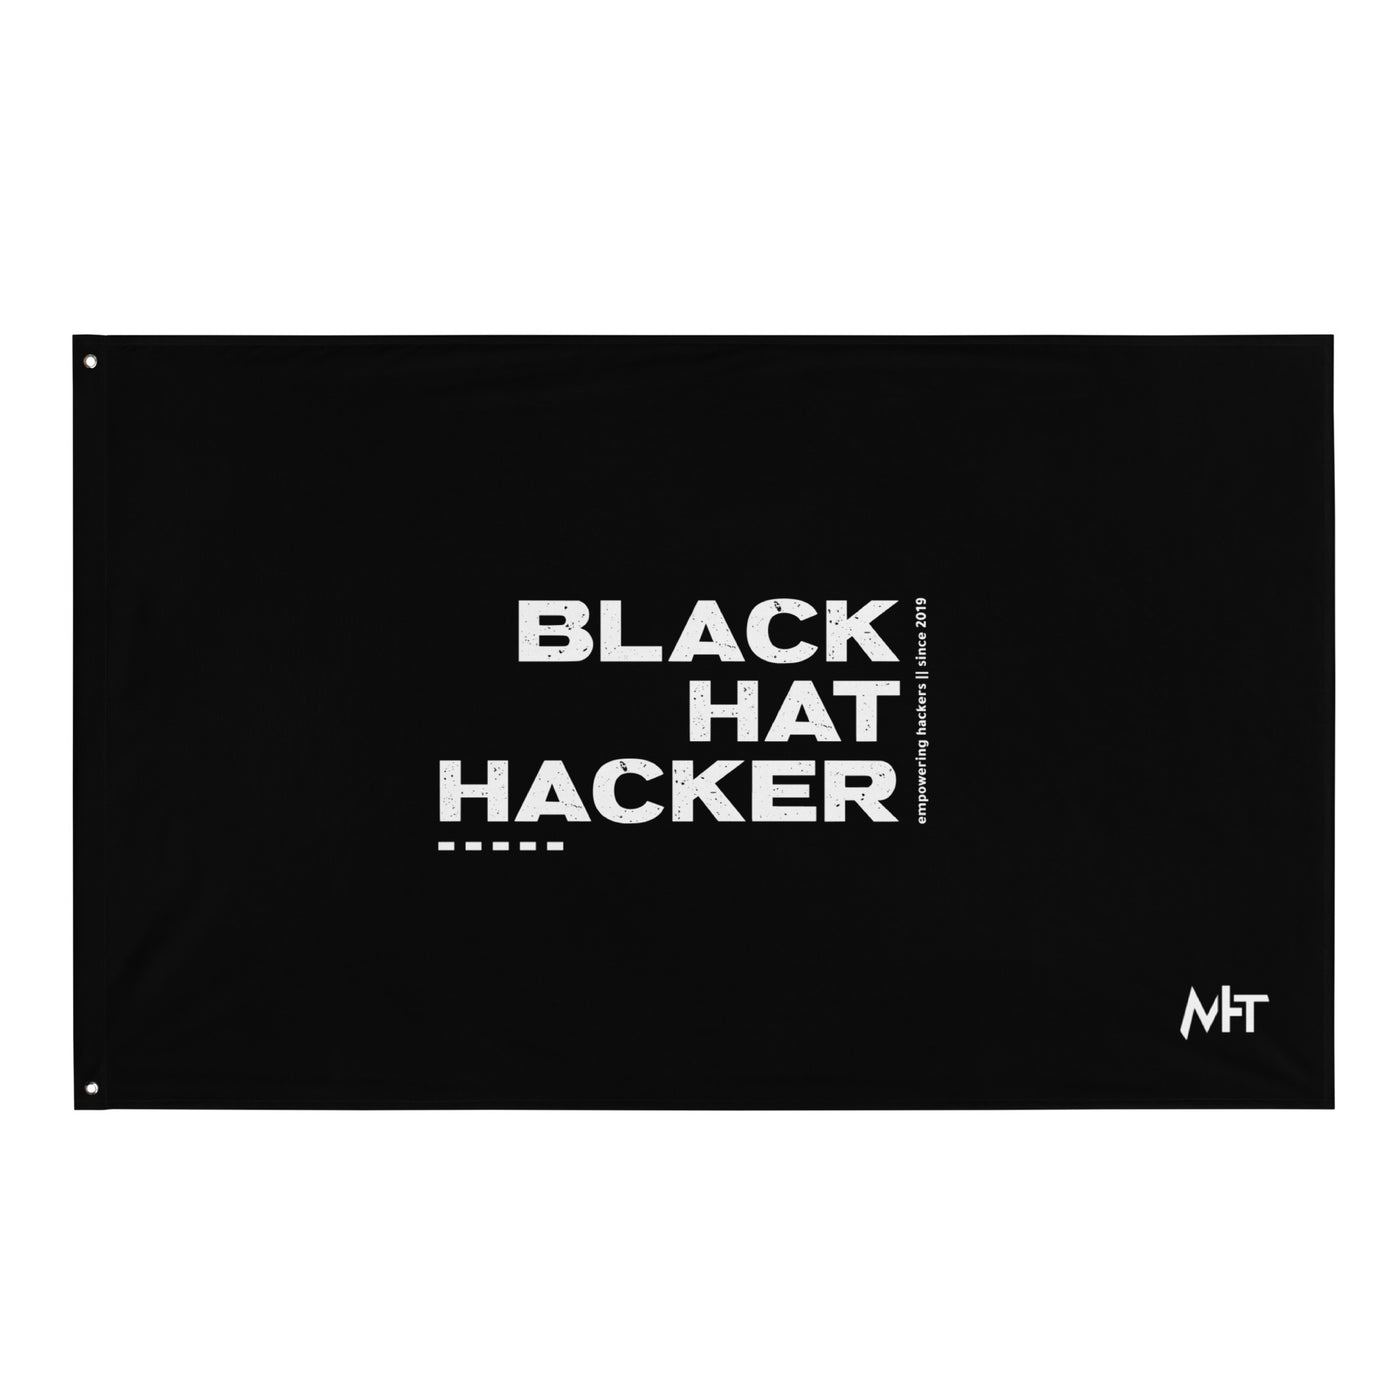 Black Hat Hacker V6 Flag